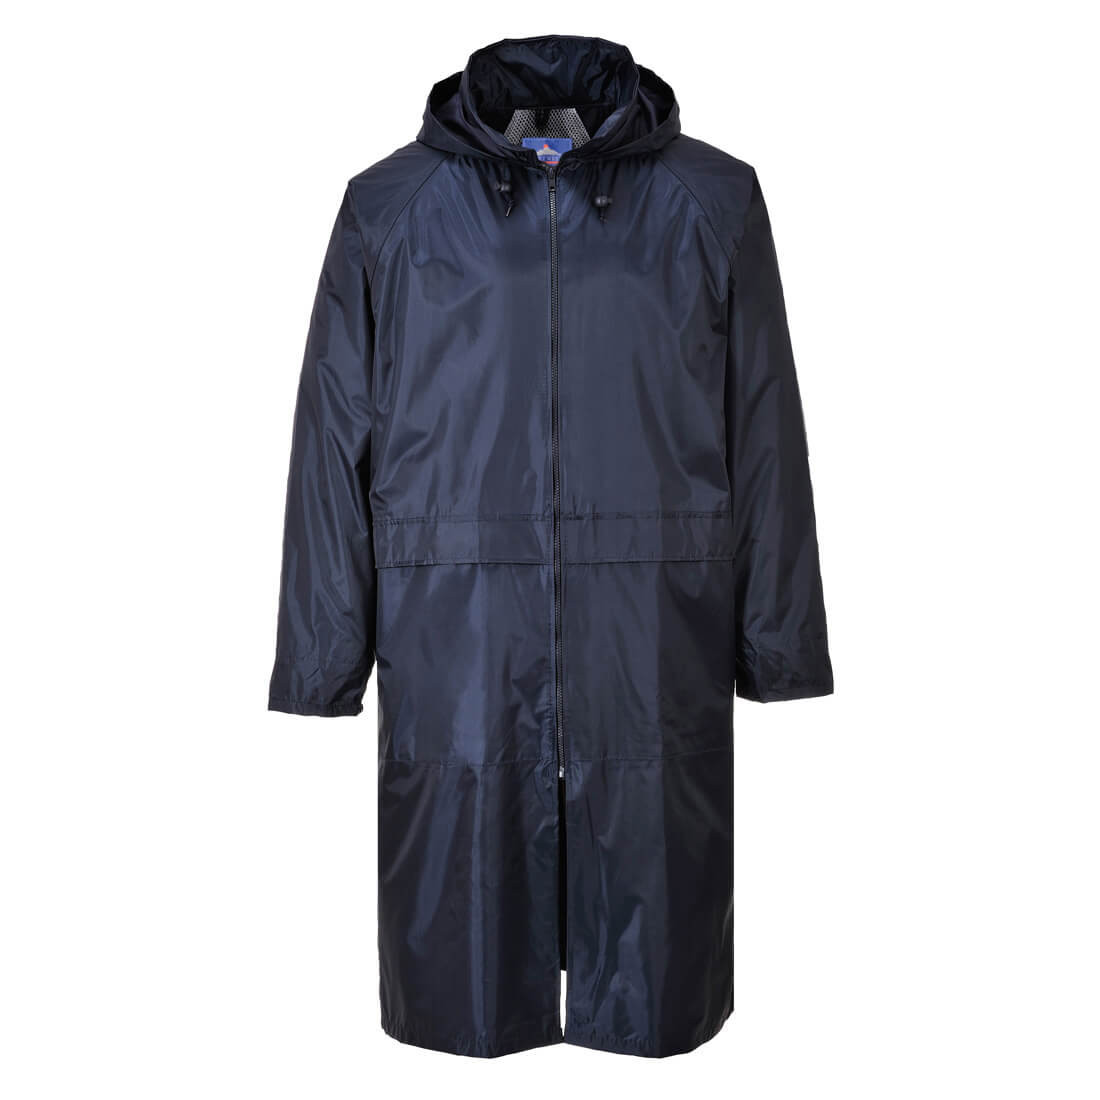 Manteau de pluie - Les vêtements de protection